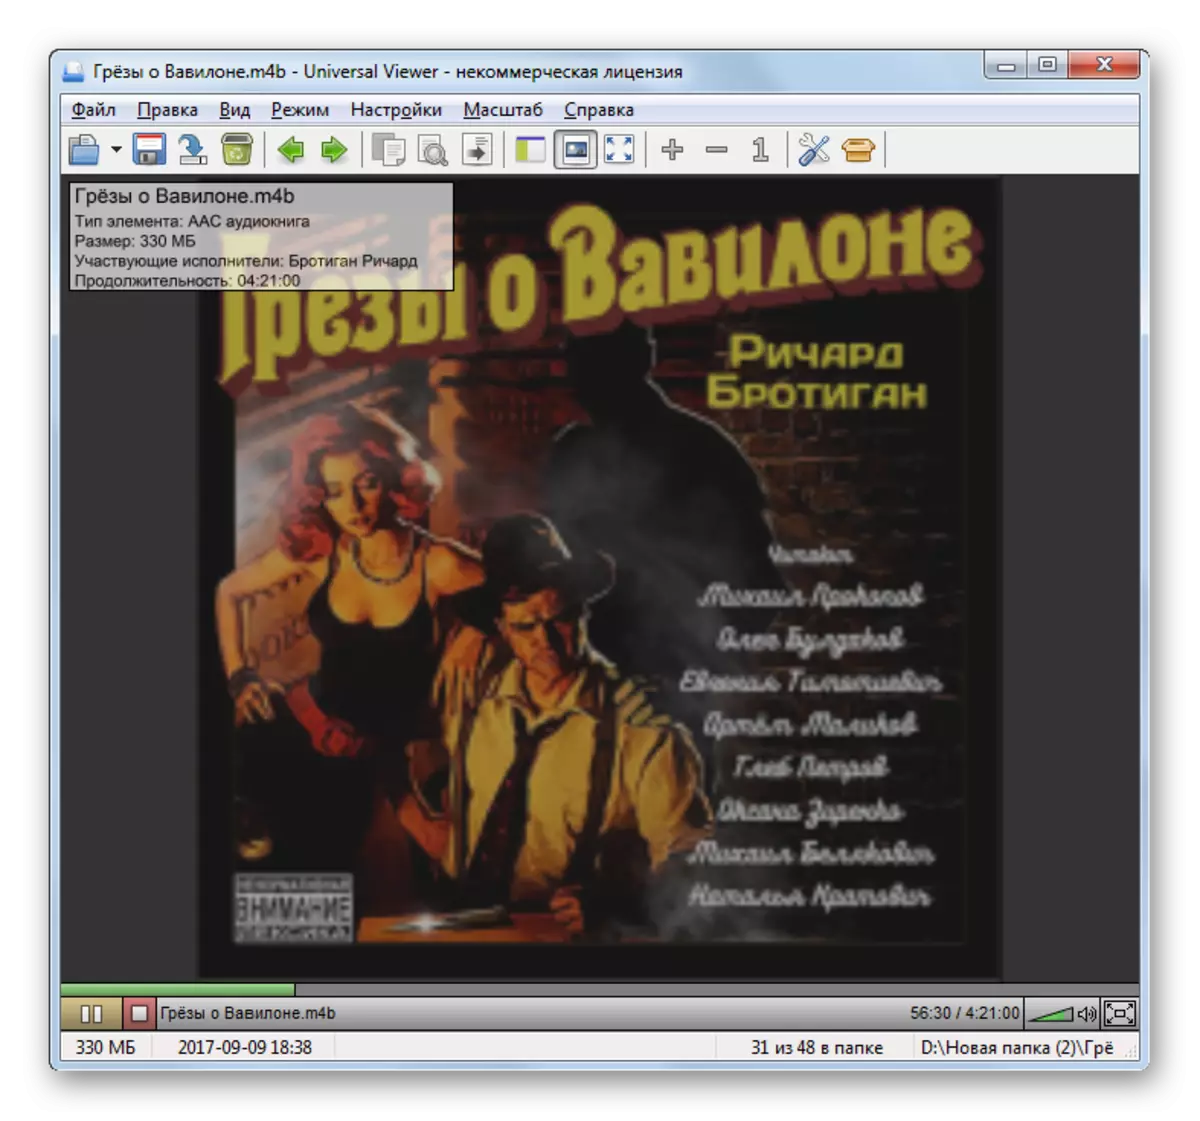 I-M4B audiobook playback kubukeli bendawo yonke